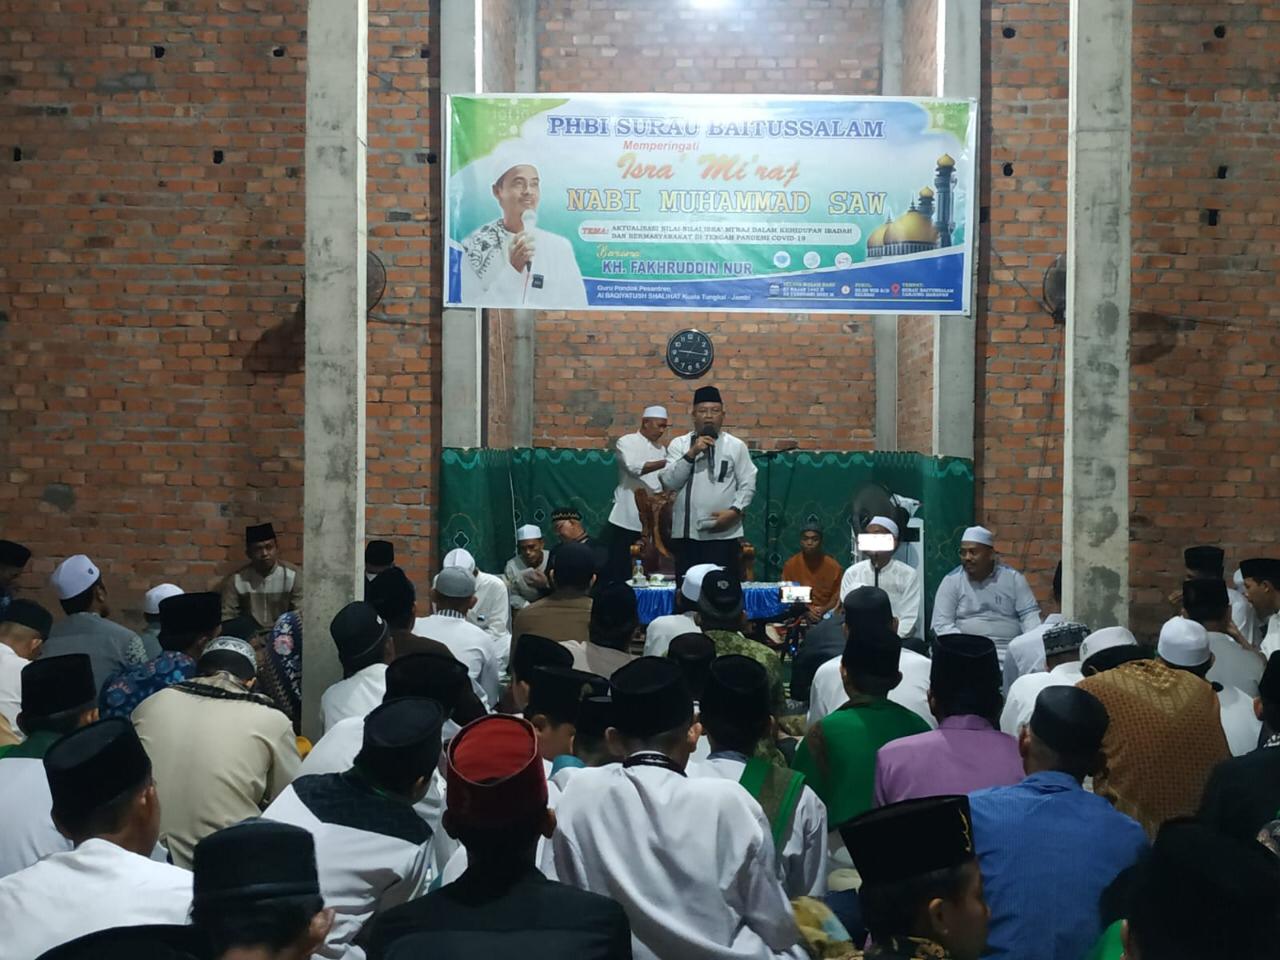 Bupati Inhil Bupati Inhil Resmikan Pelaksanaan Sholat 5 Waktu di Surau Baitussalam Tanjung Harapan